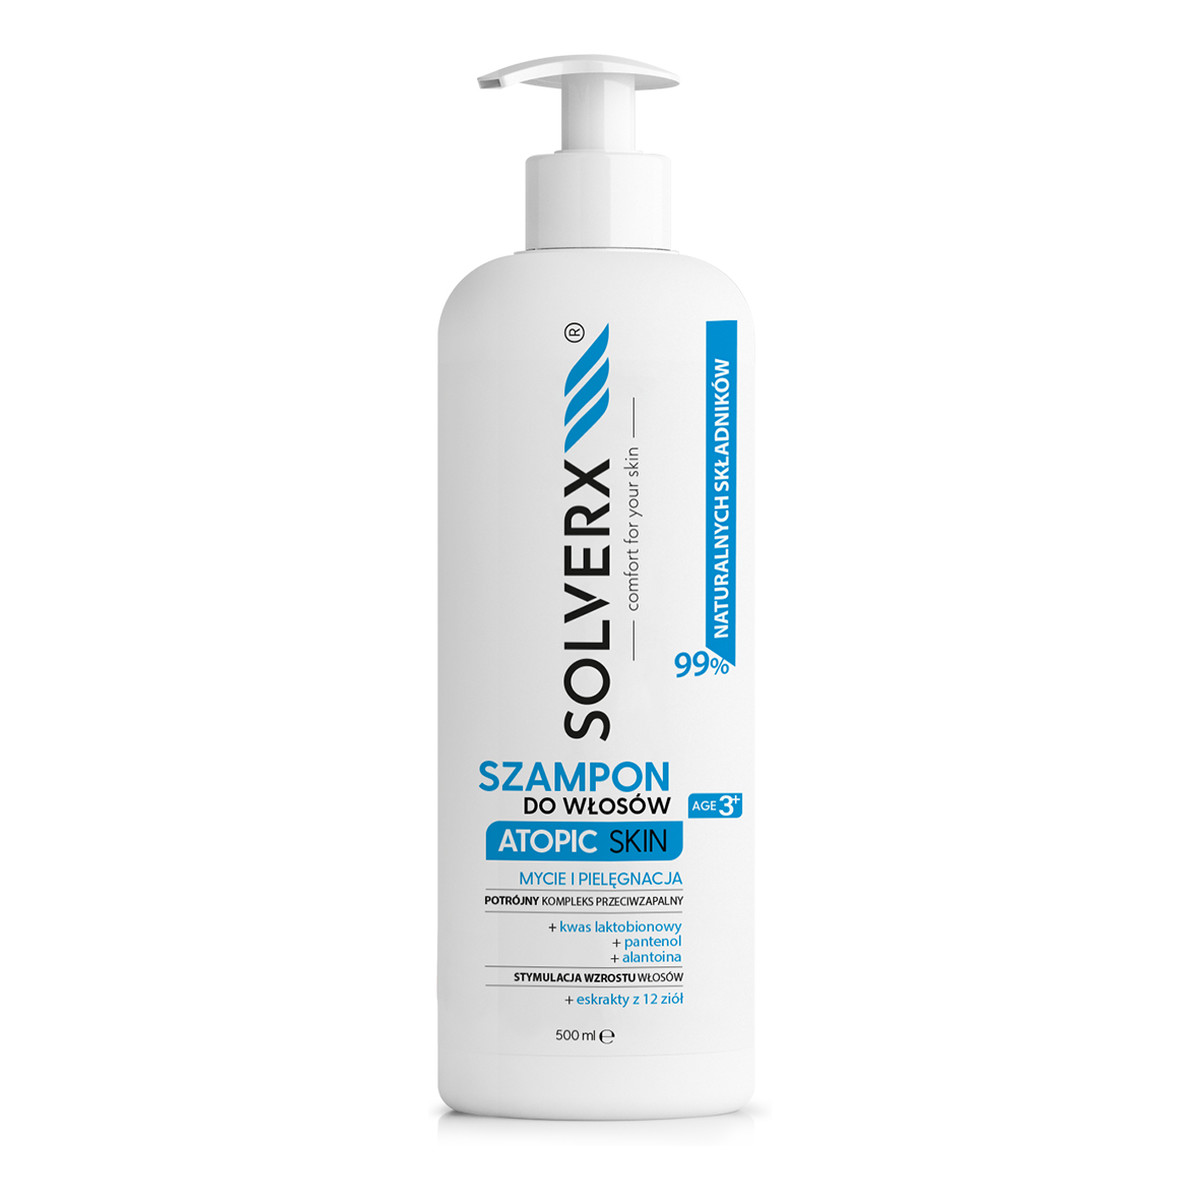 Solverx Atopic Skin Szampon do włosów 500ml